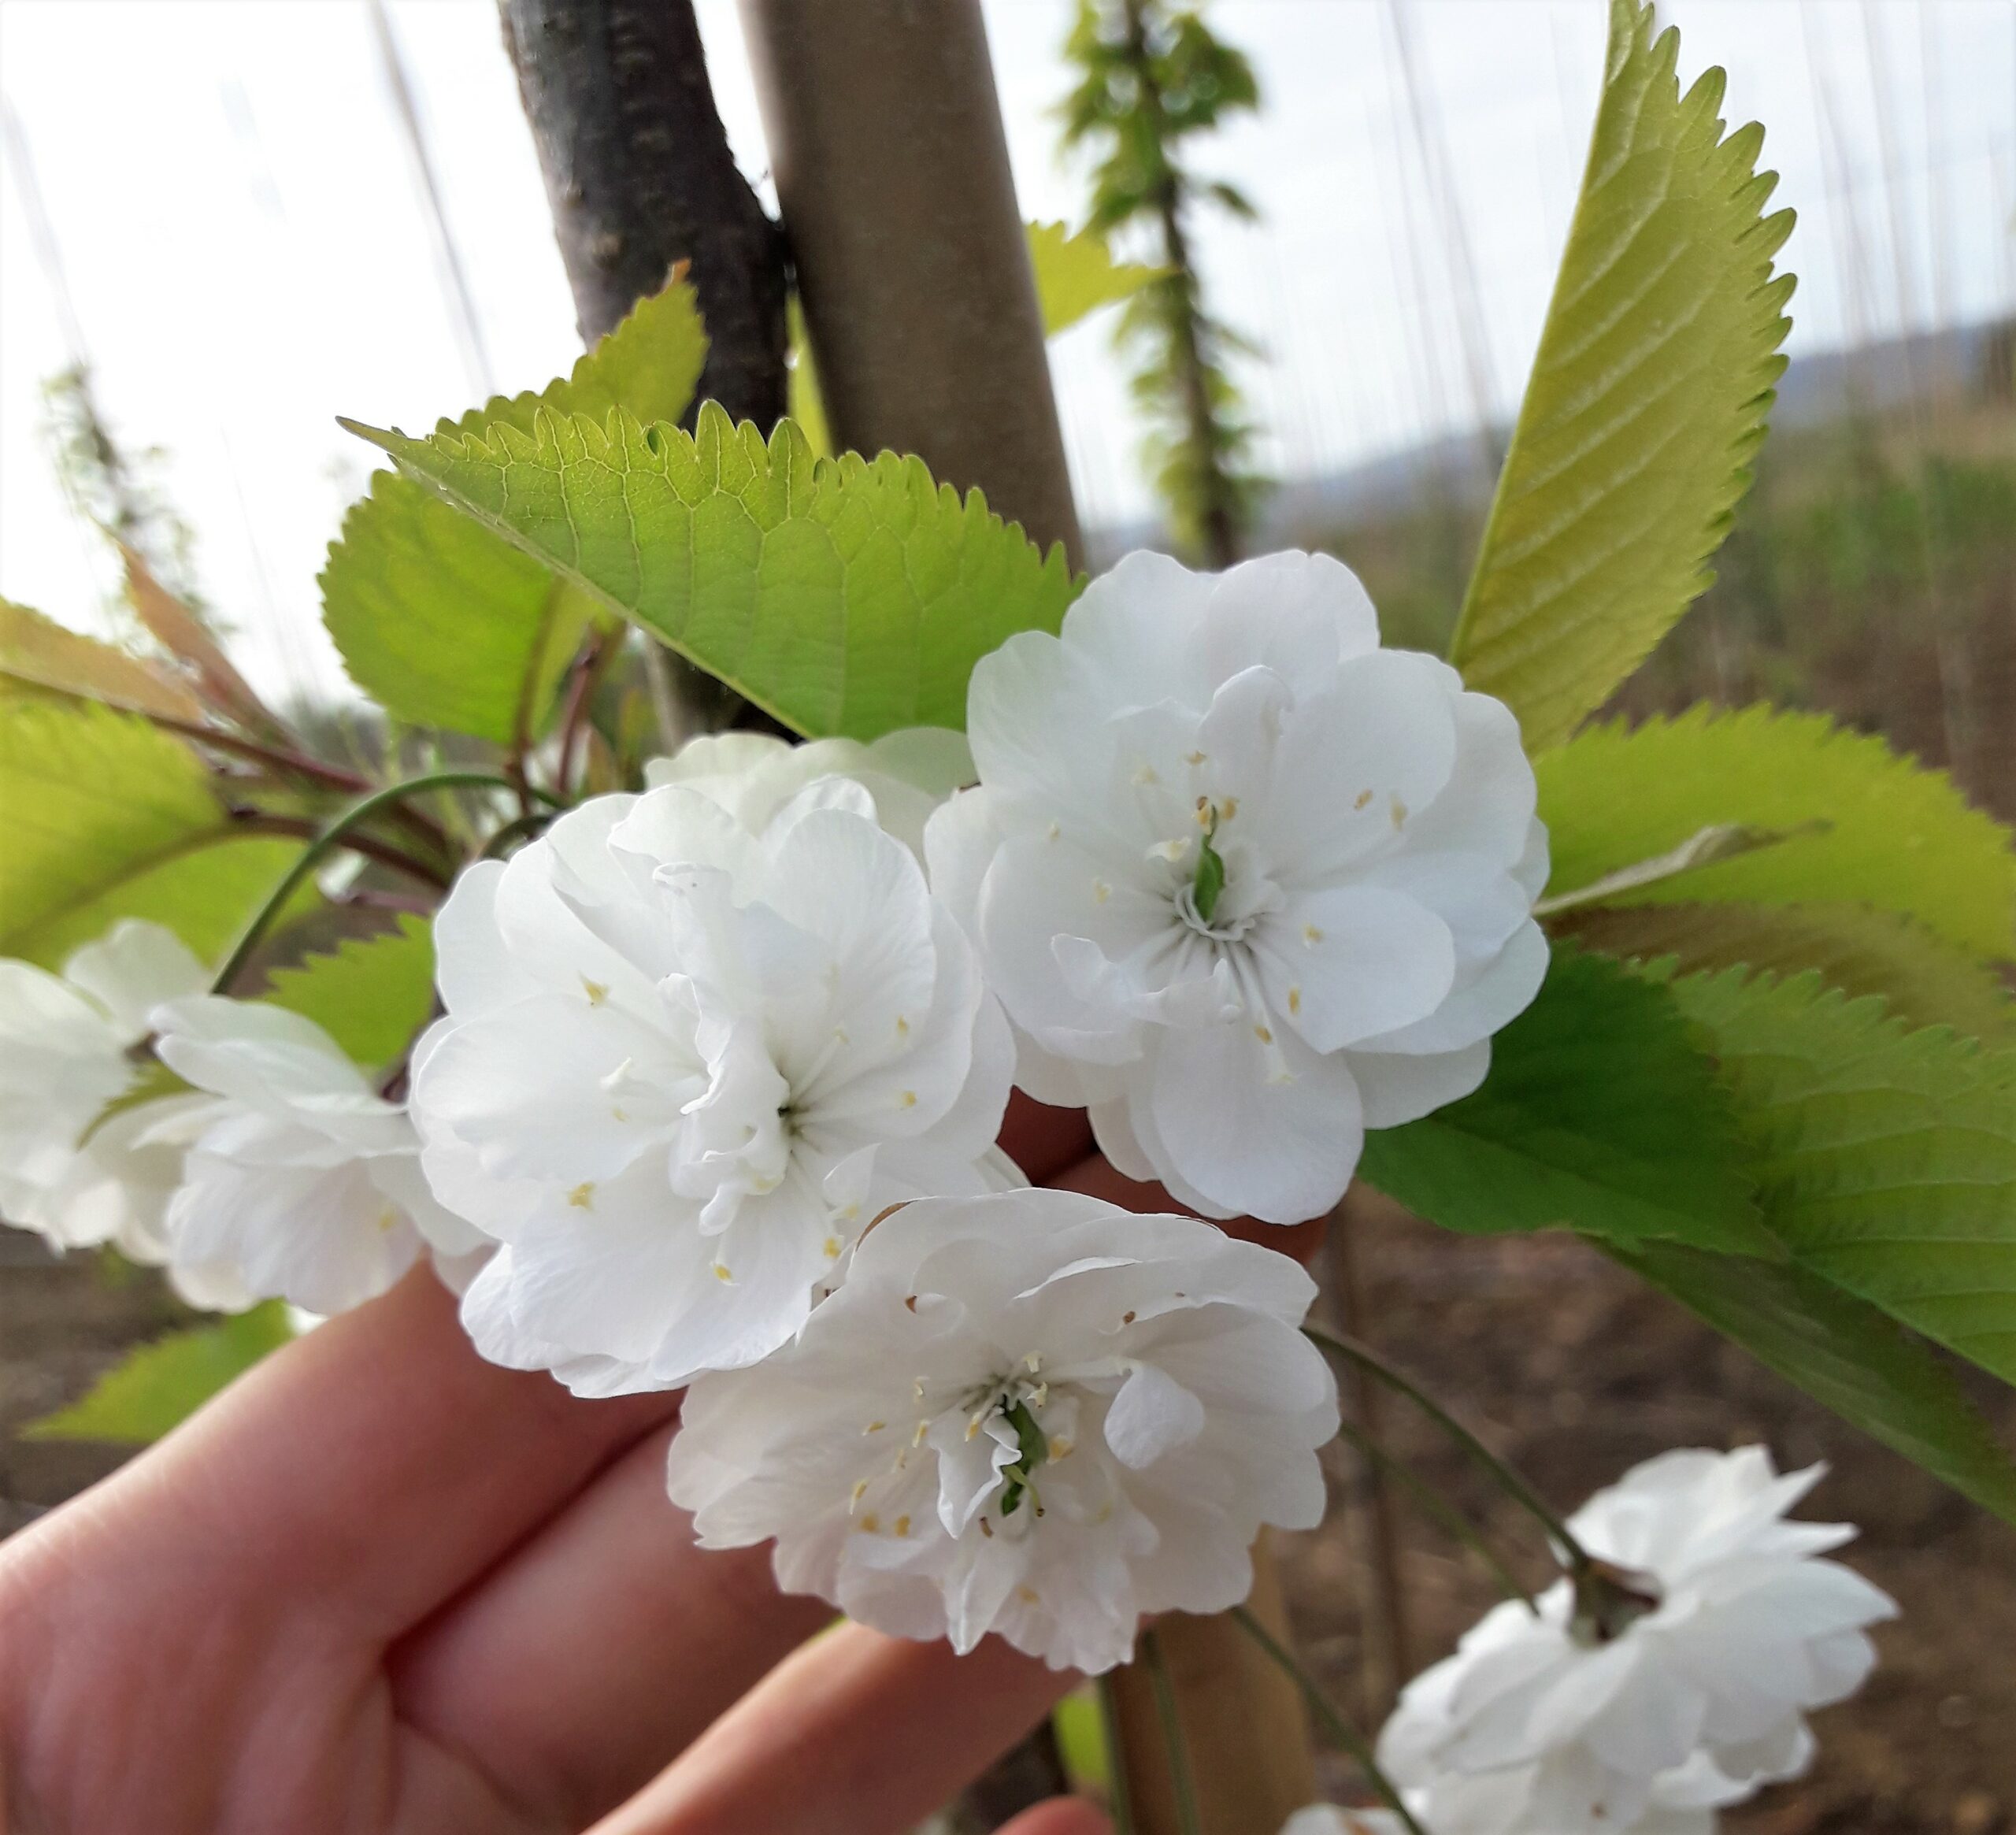 Prunus avium Plena white flower blossom and green leaves